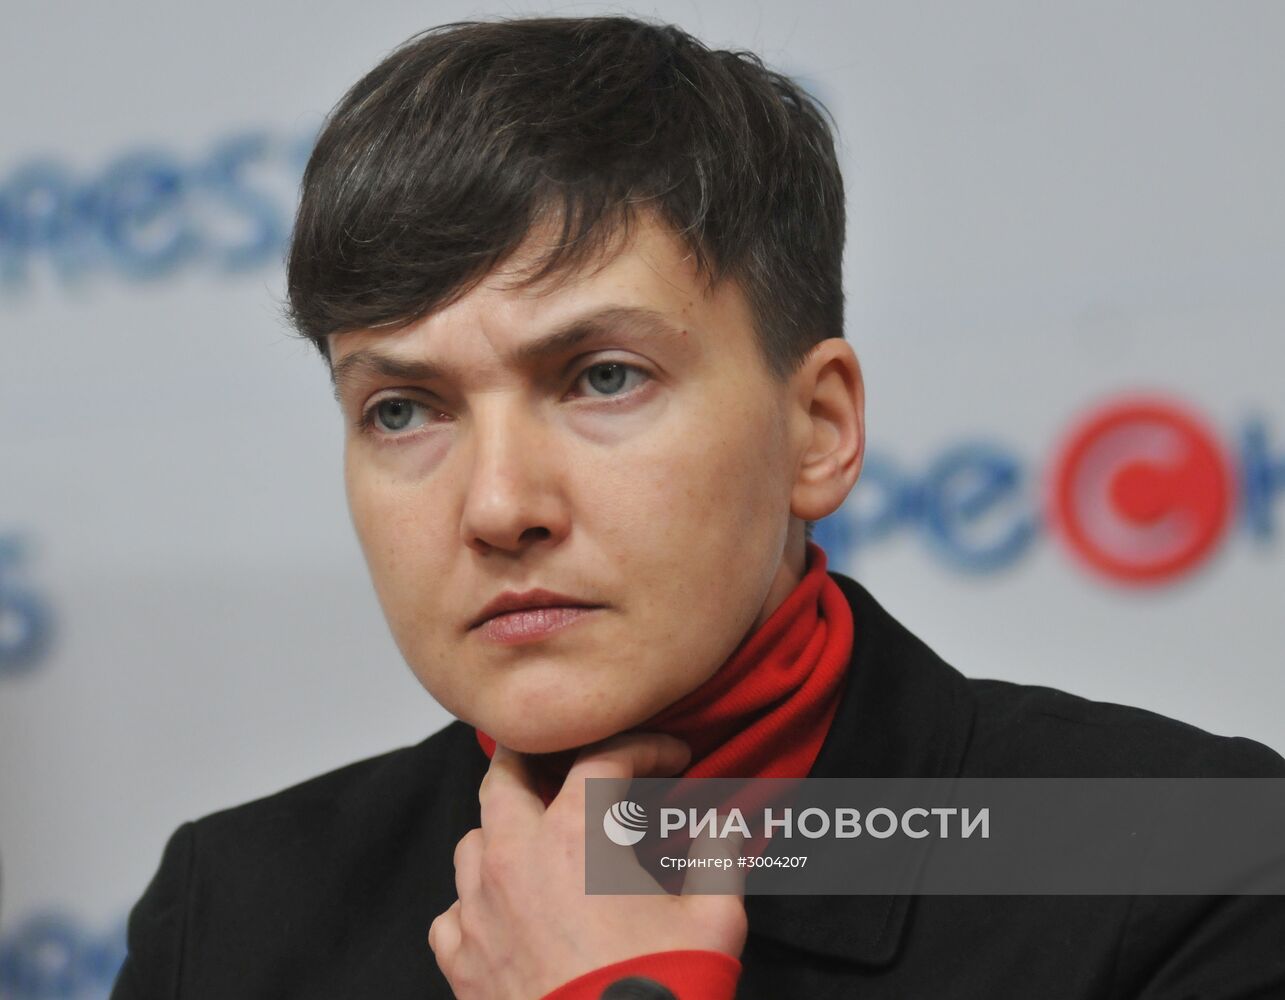 Пресс-конференция Надежды Савченко во Львове